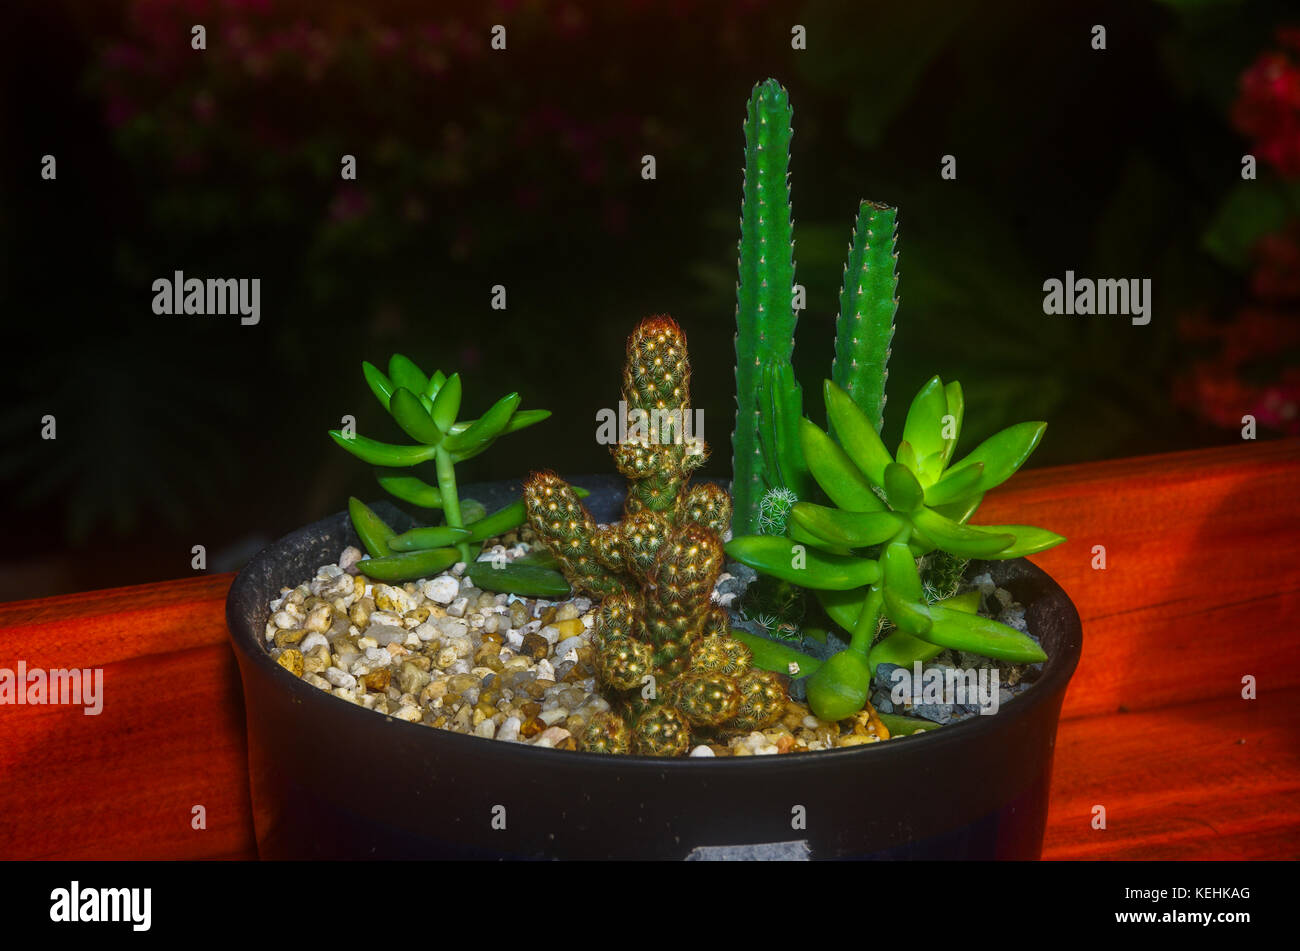 Garden ideas arrangements with succulent  plants Stock Photo